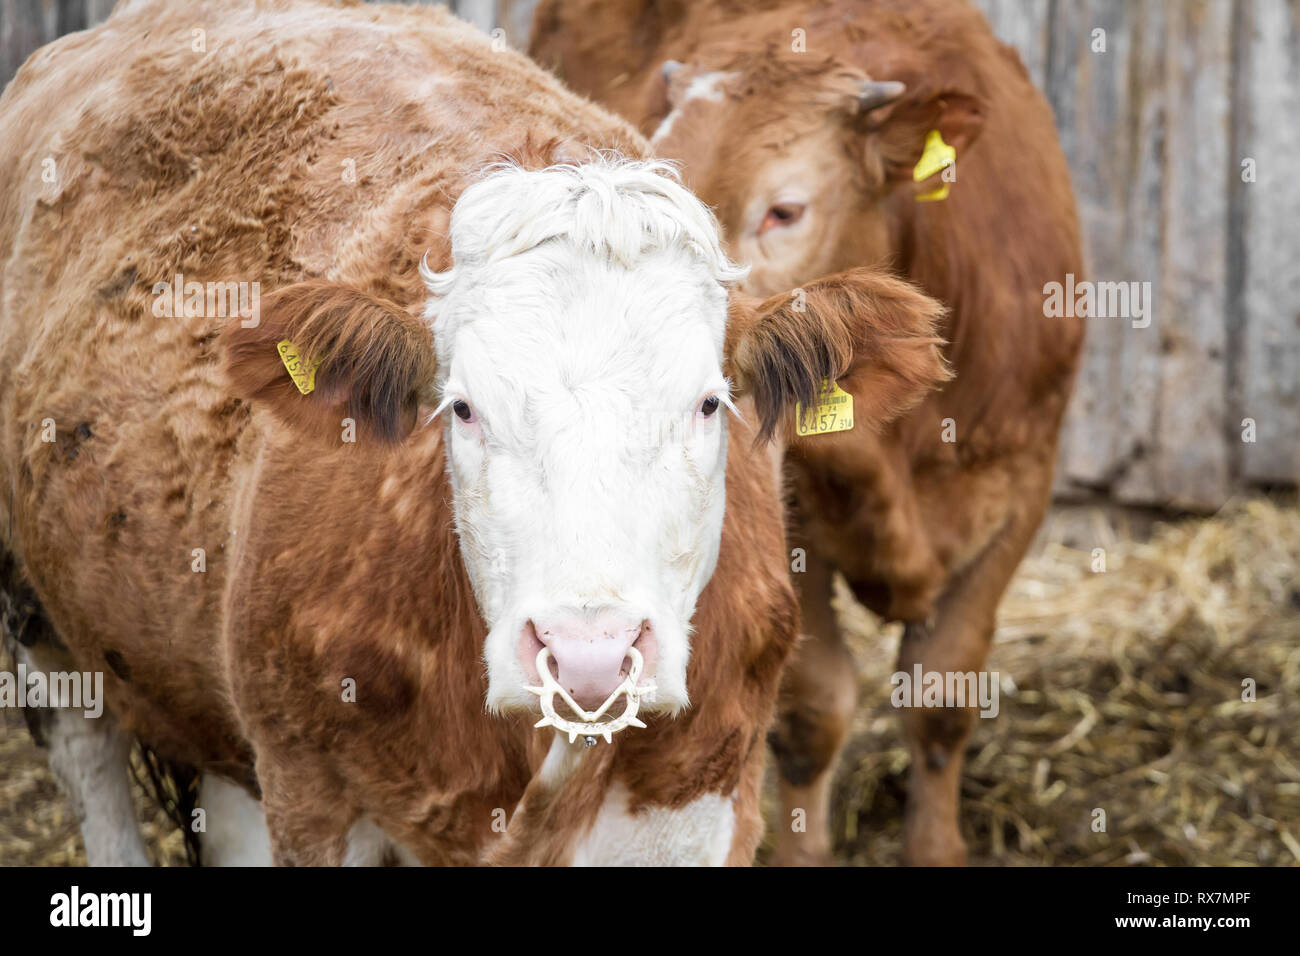 Free Range ganado de cría de vacas nodrizas Foto de stock